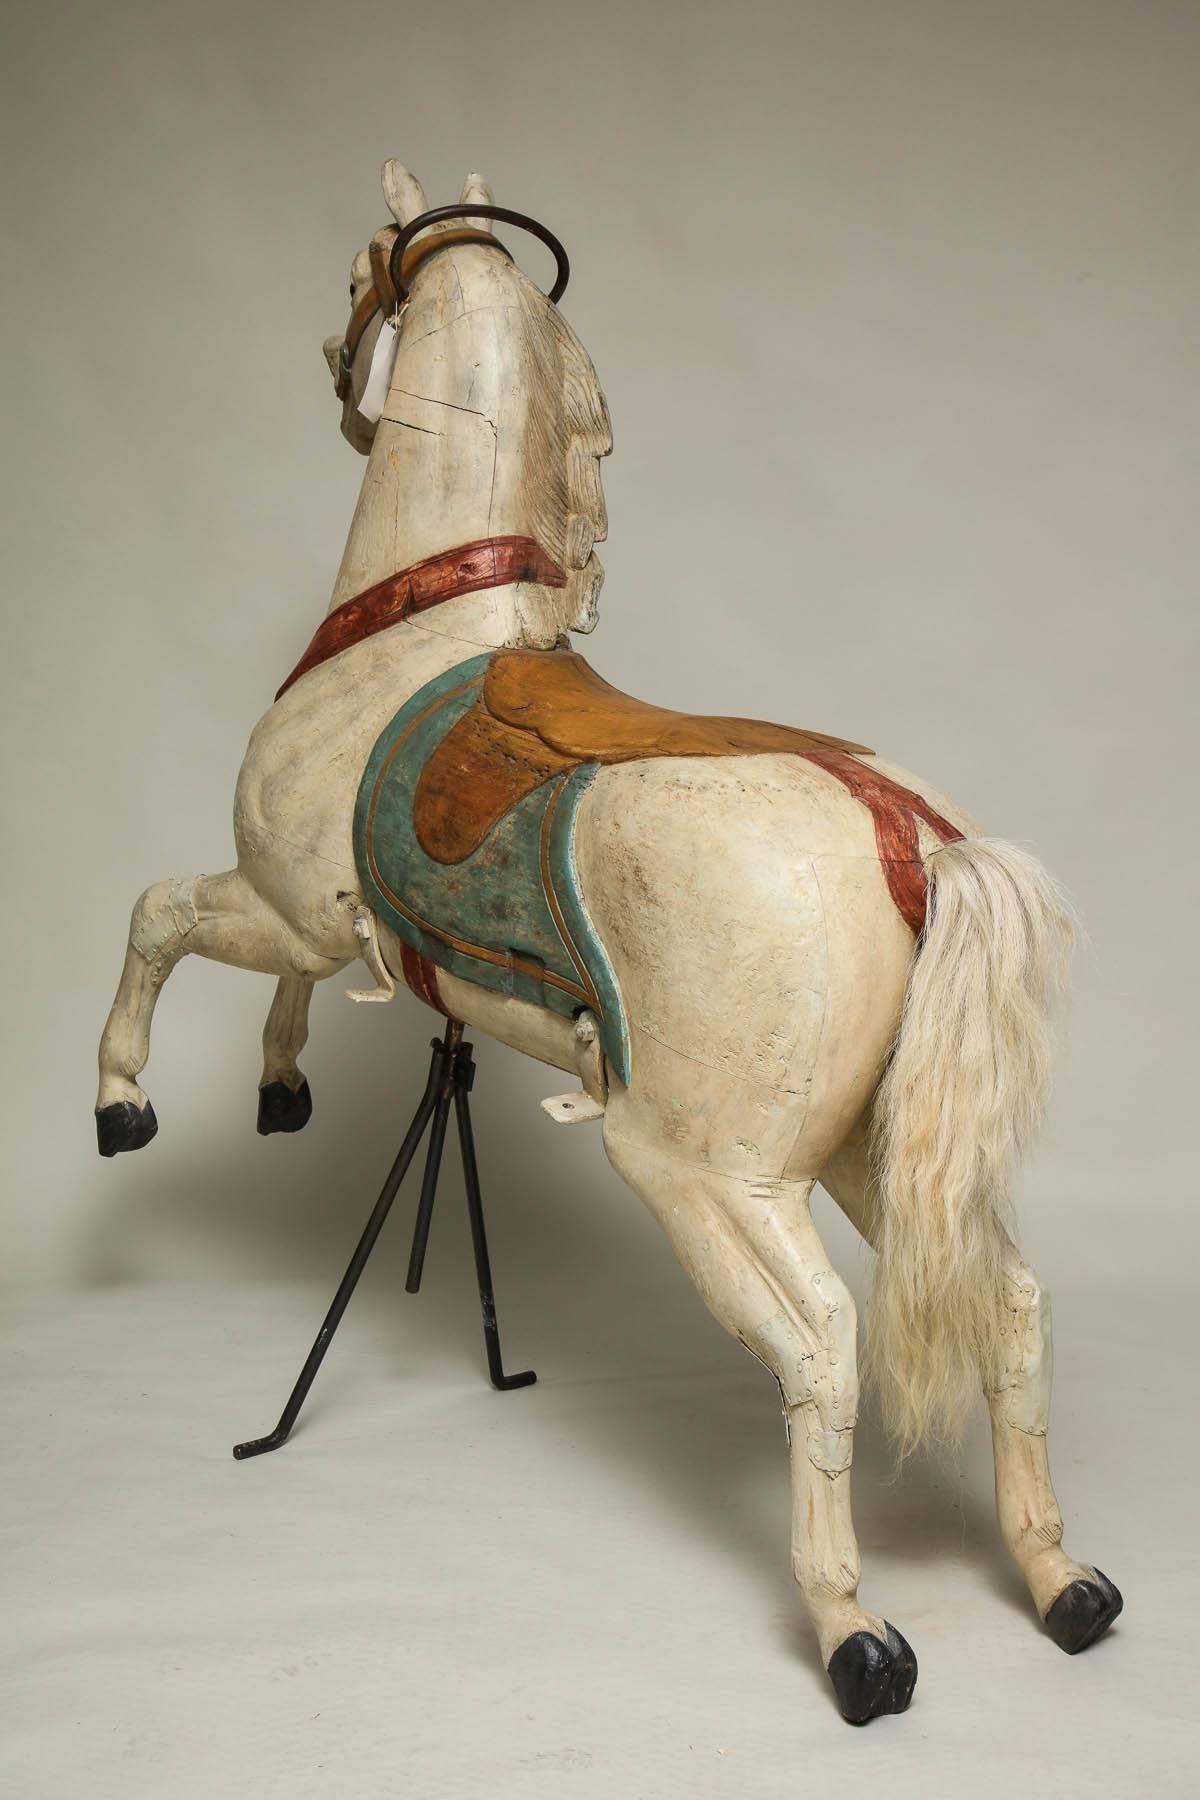 Wood Chahut Carousel Horse by Fredrich Heyn